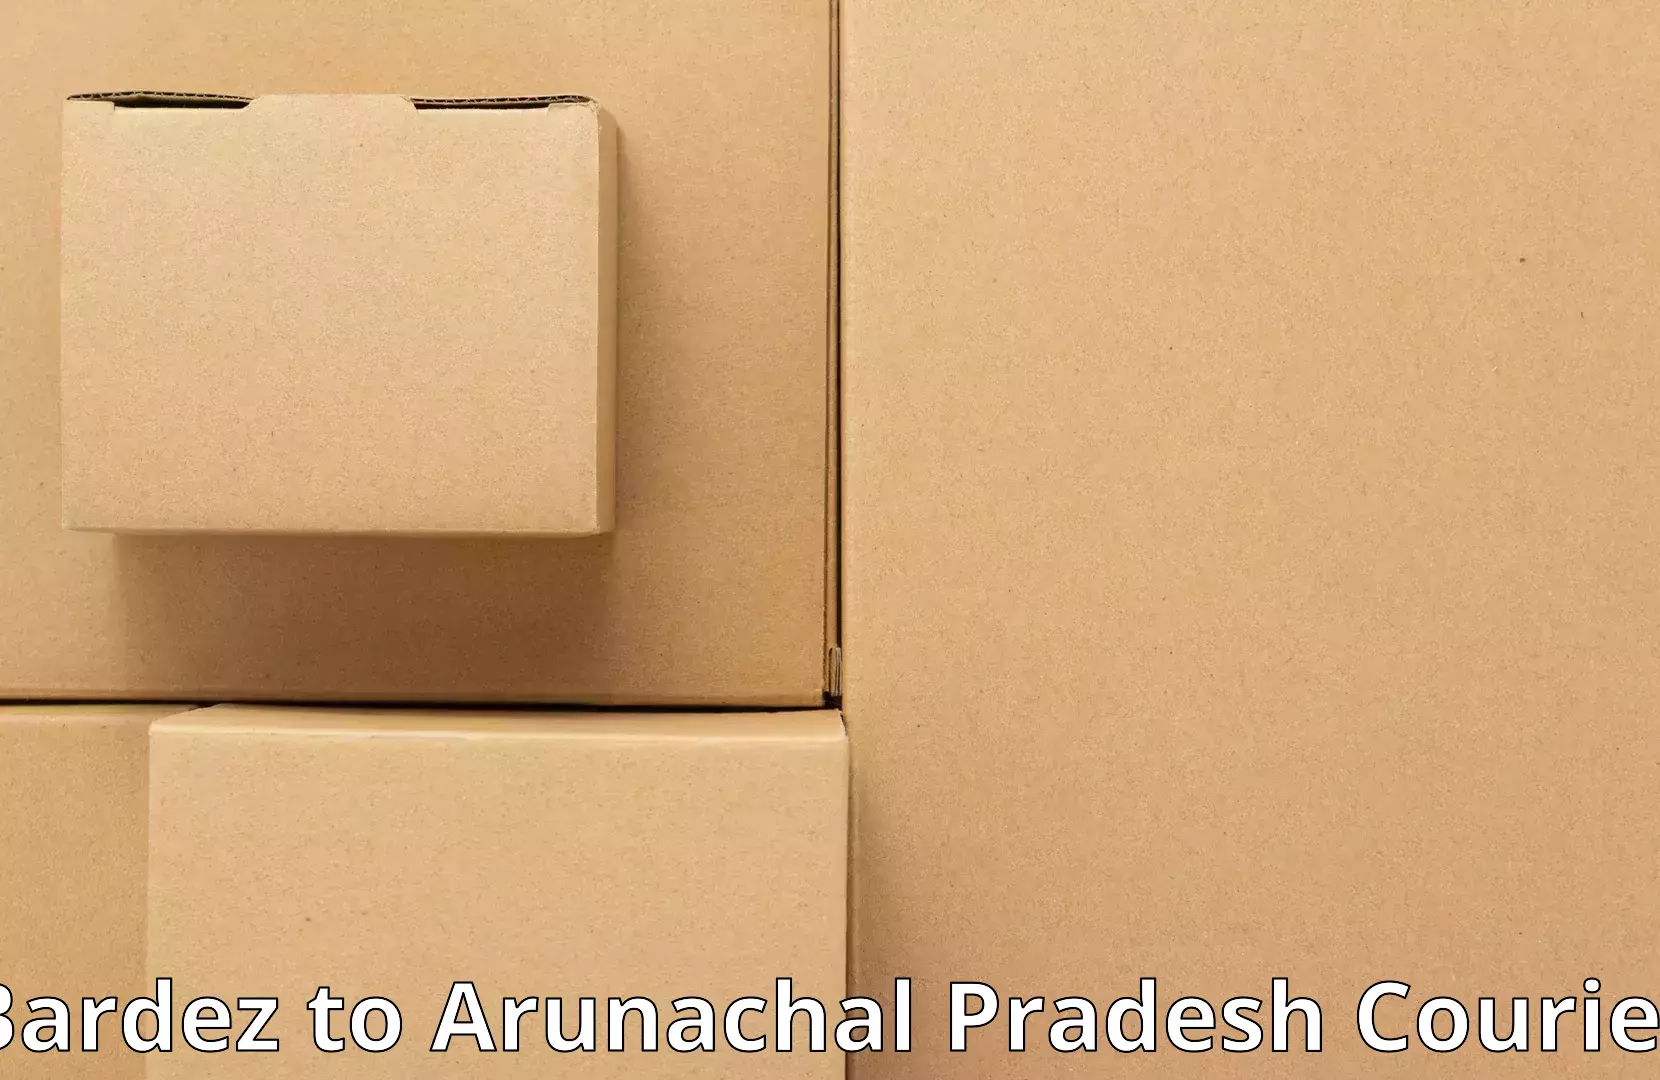 Furniture moving plans Bardez to Arunachal Pradesh